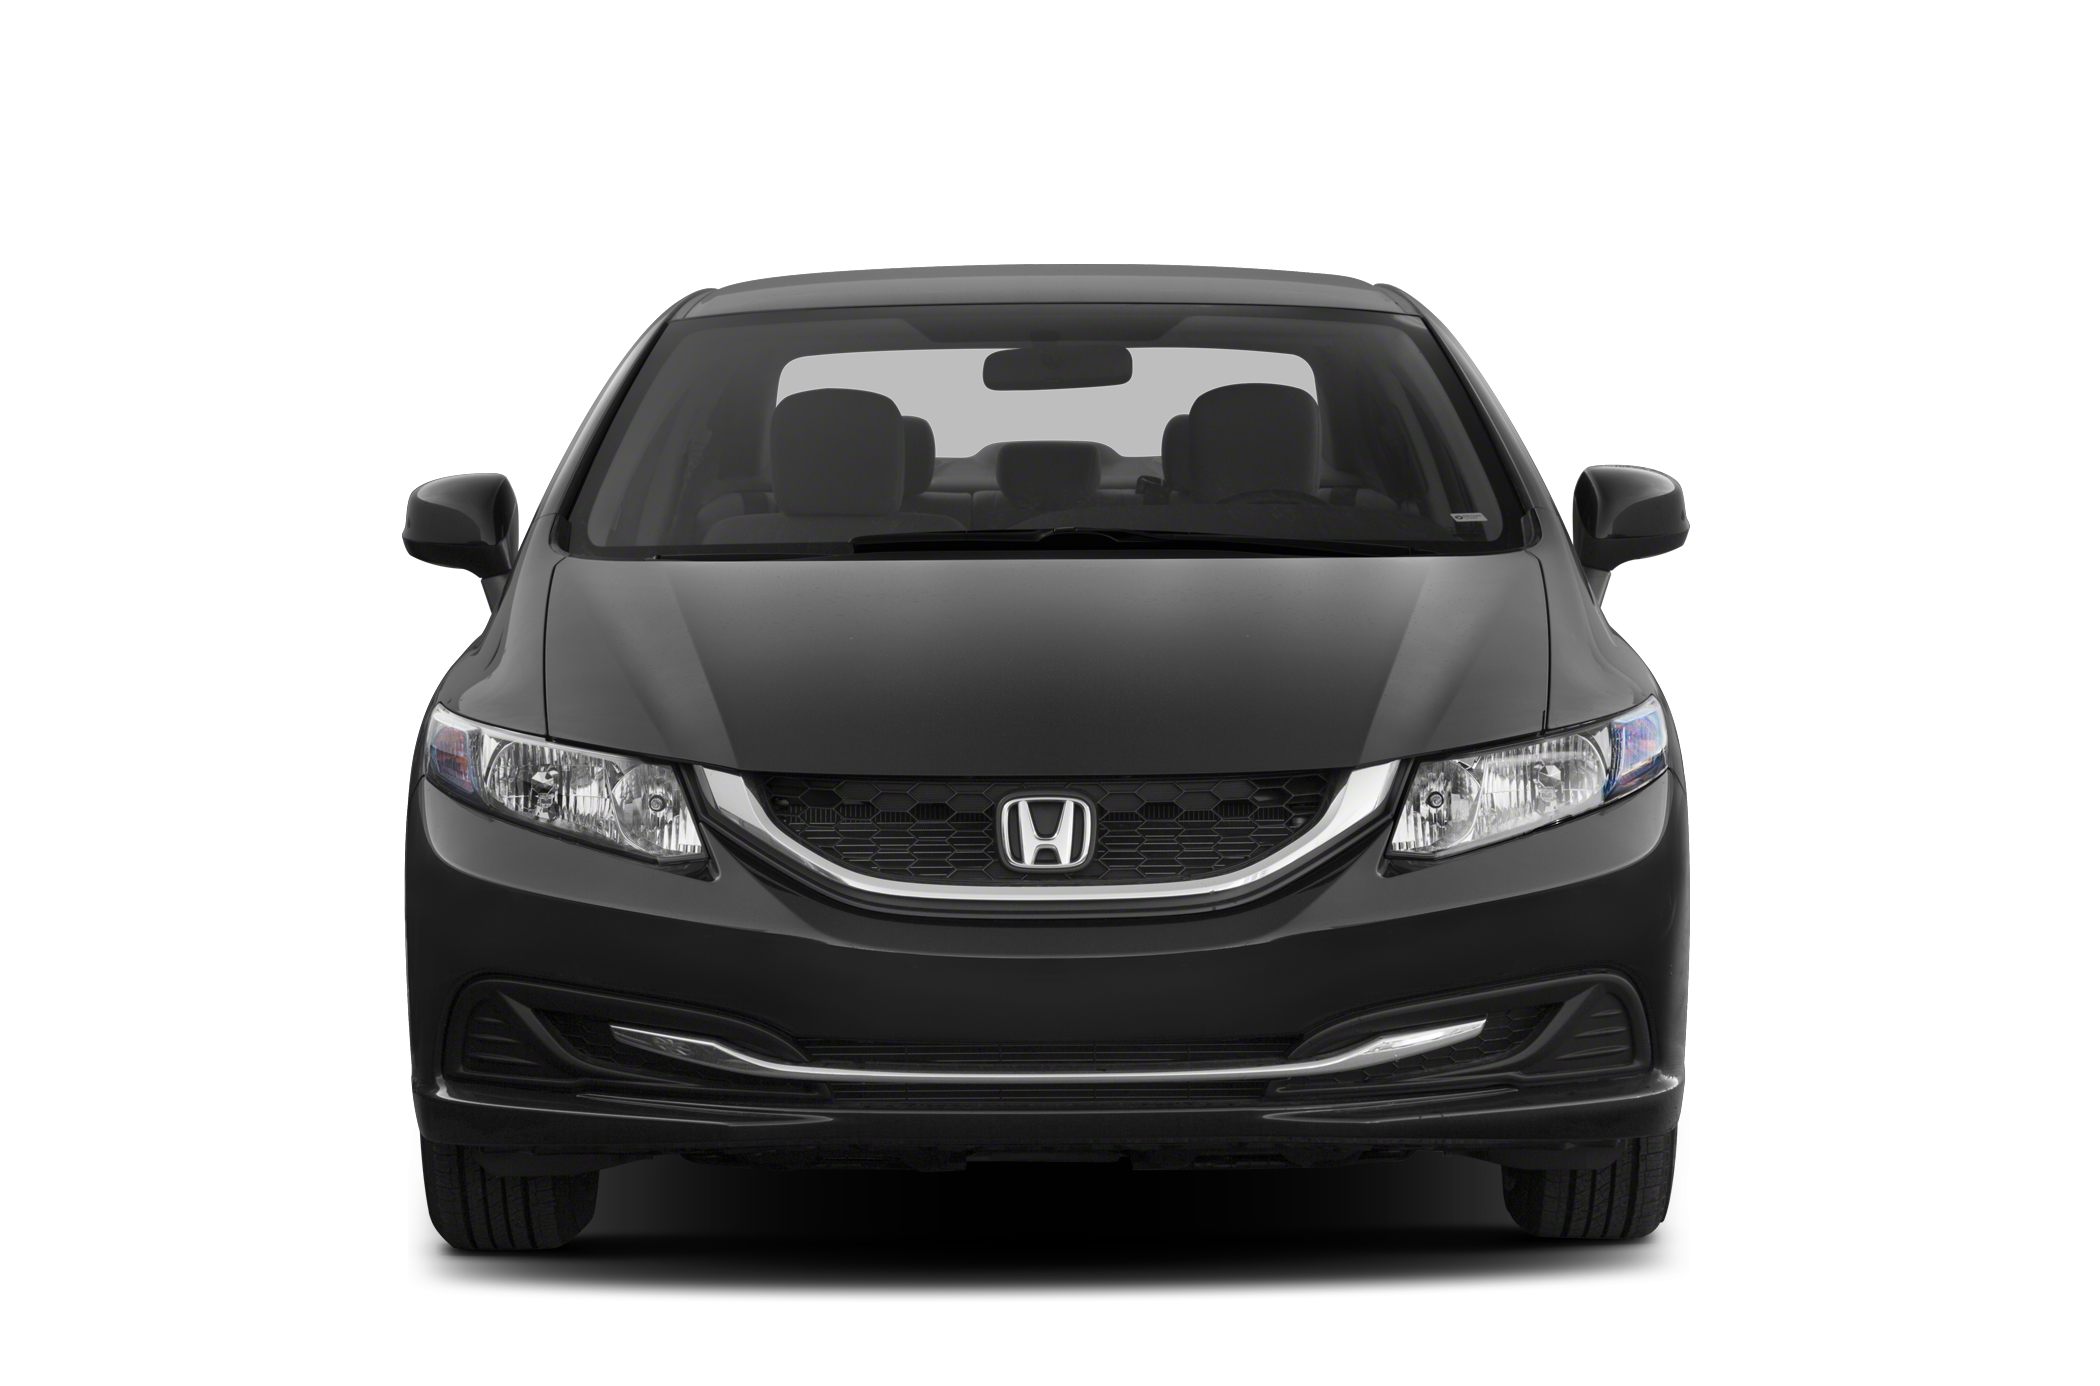 2013 Honda Civic Pictures